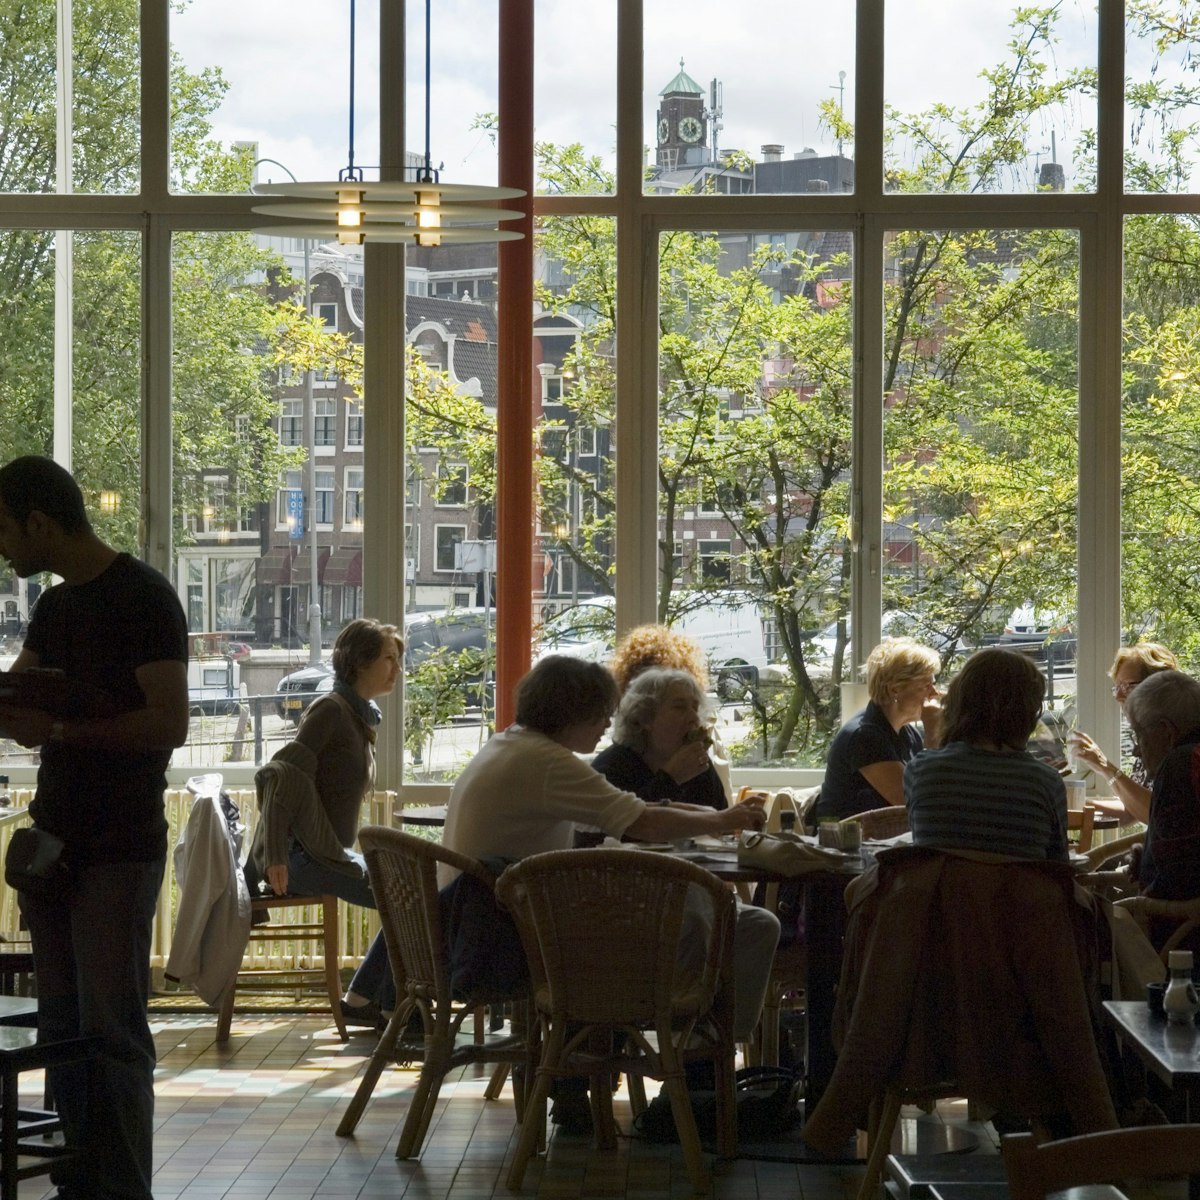 Cafe de Jaren in city centre.